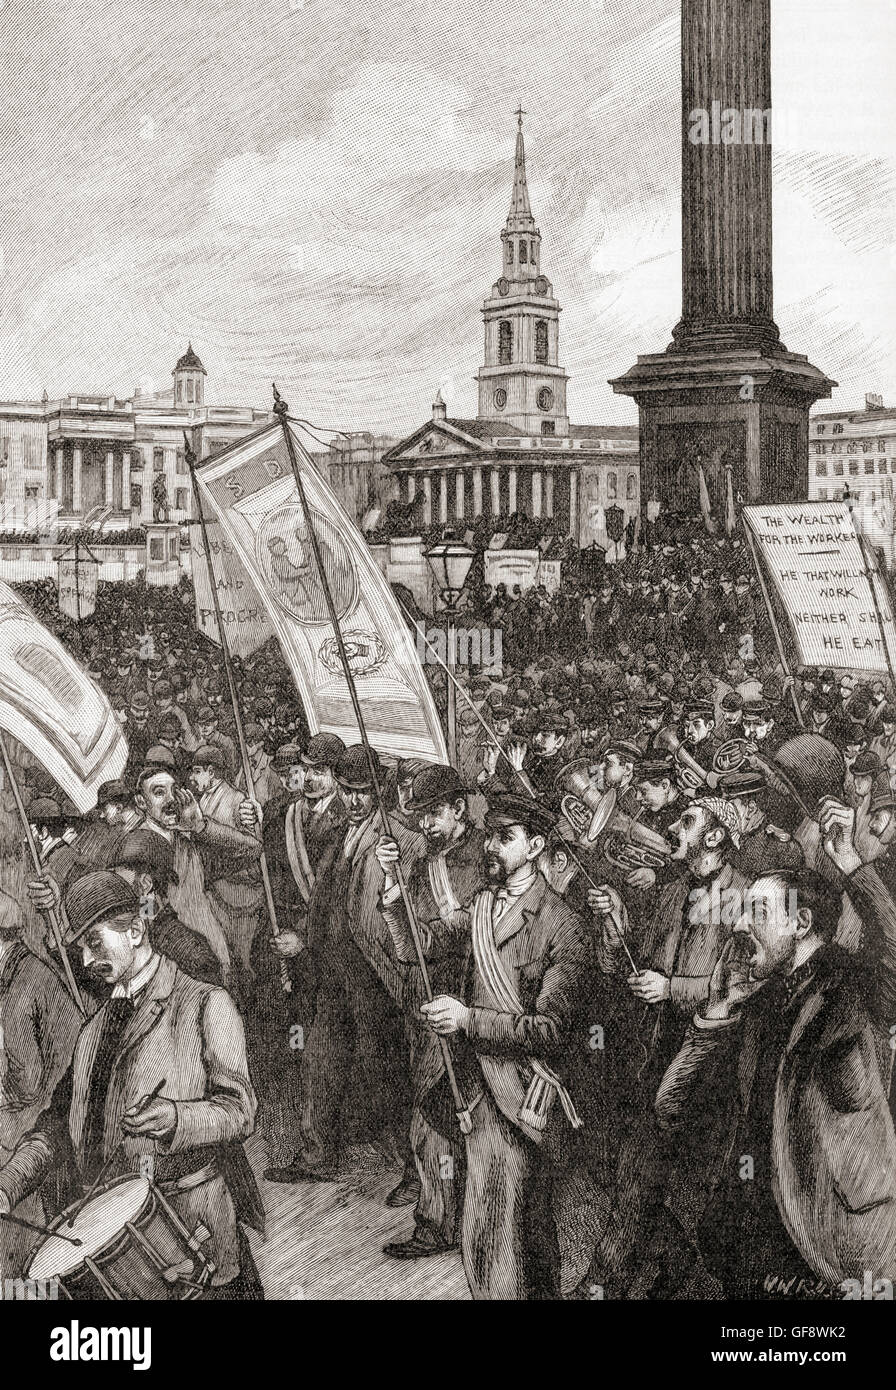 Öffentliche Sitzung am Trafalgar Square in London im Jahre 1892 anlässlich des Jahrestages des Bloody Sunday 1887 anzugreifen wenn eine kombinierte Polizei und Militär gegen eine Menge Protestierende britischen Unterdrückung in Irland und Arbeitslosigkeit links 75 Personen verletzt. Stockfoto